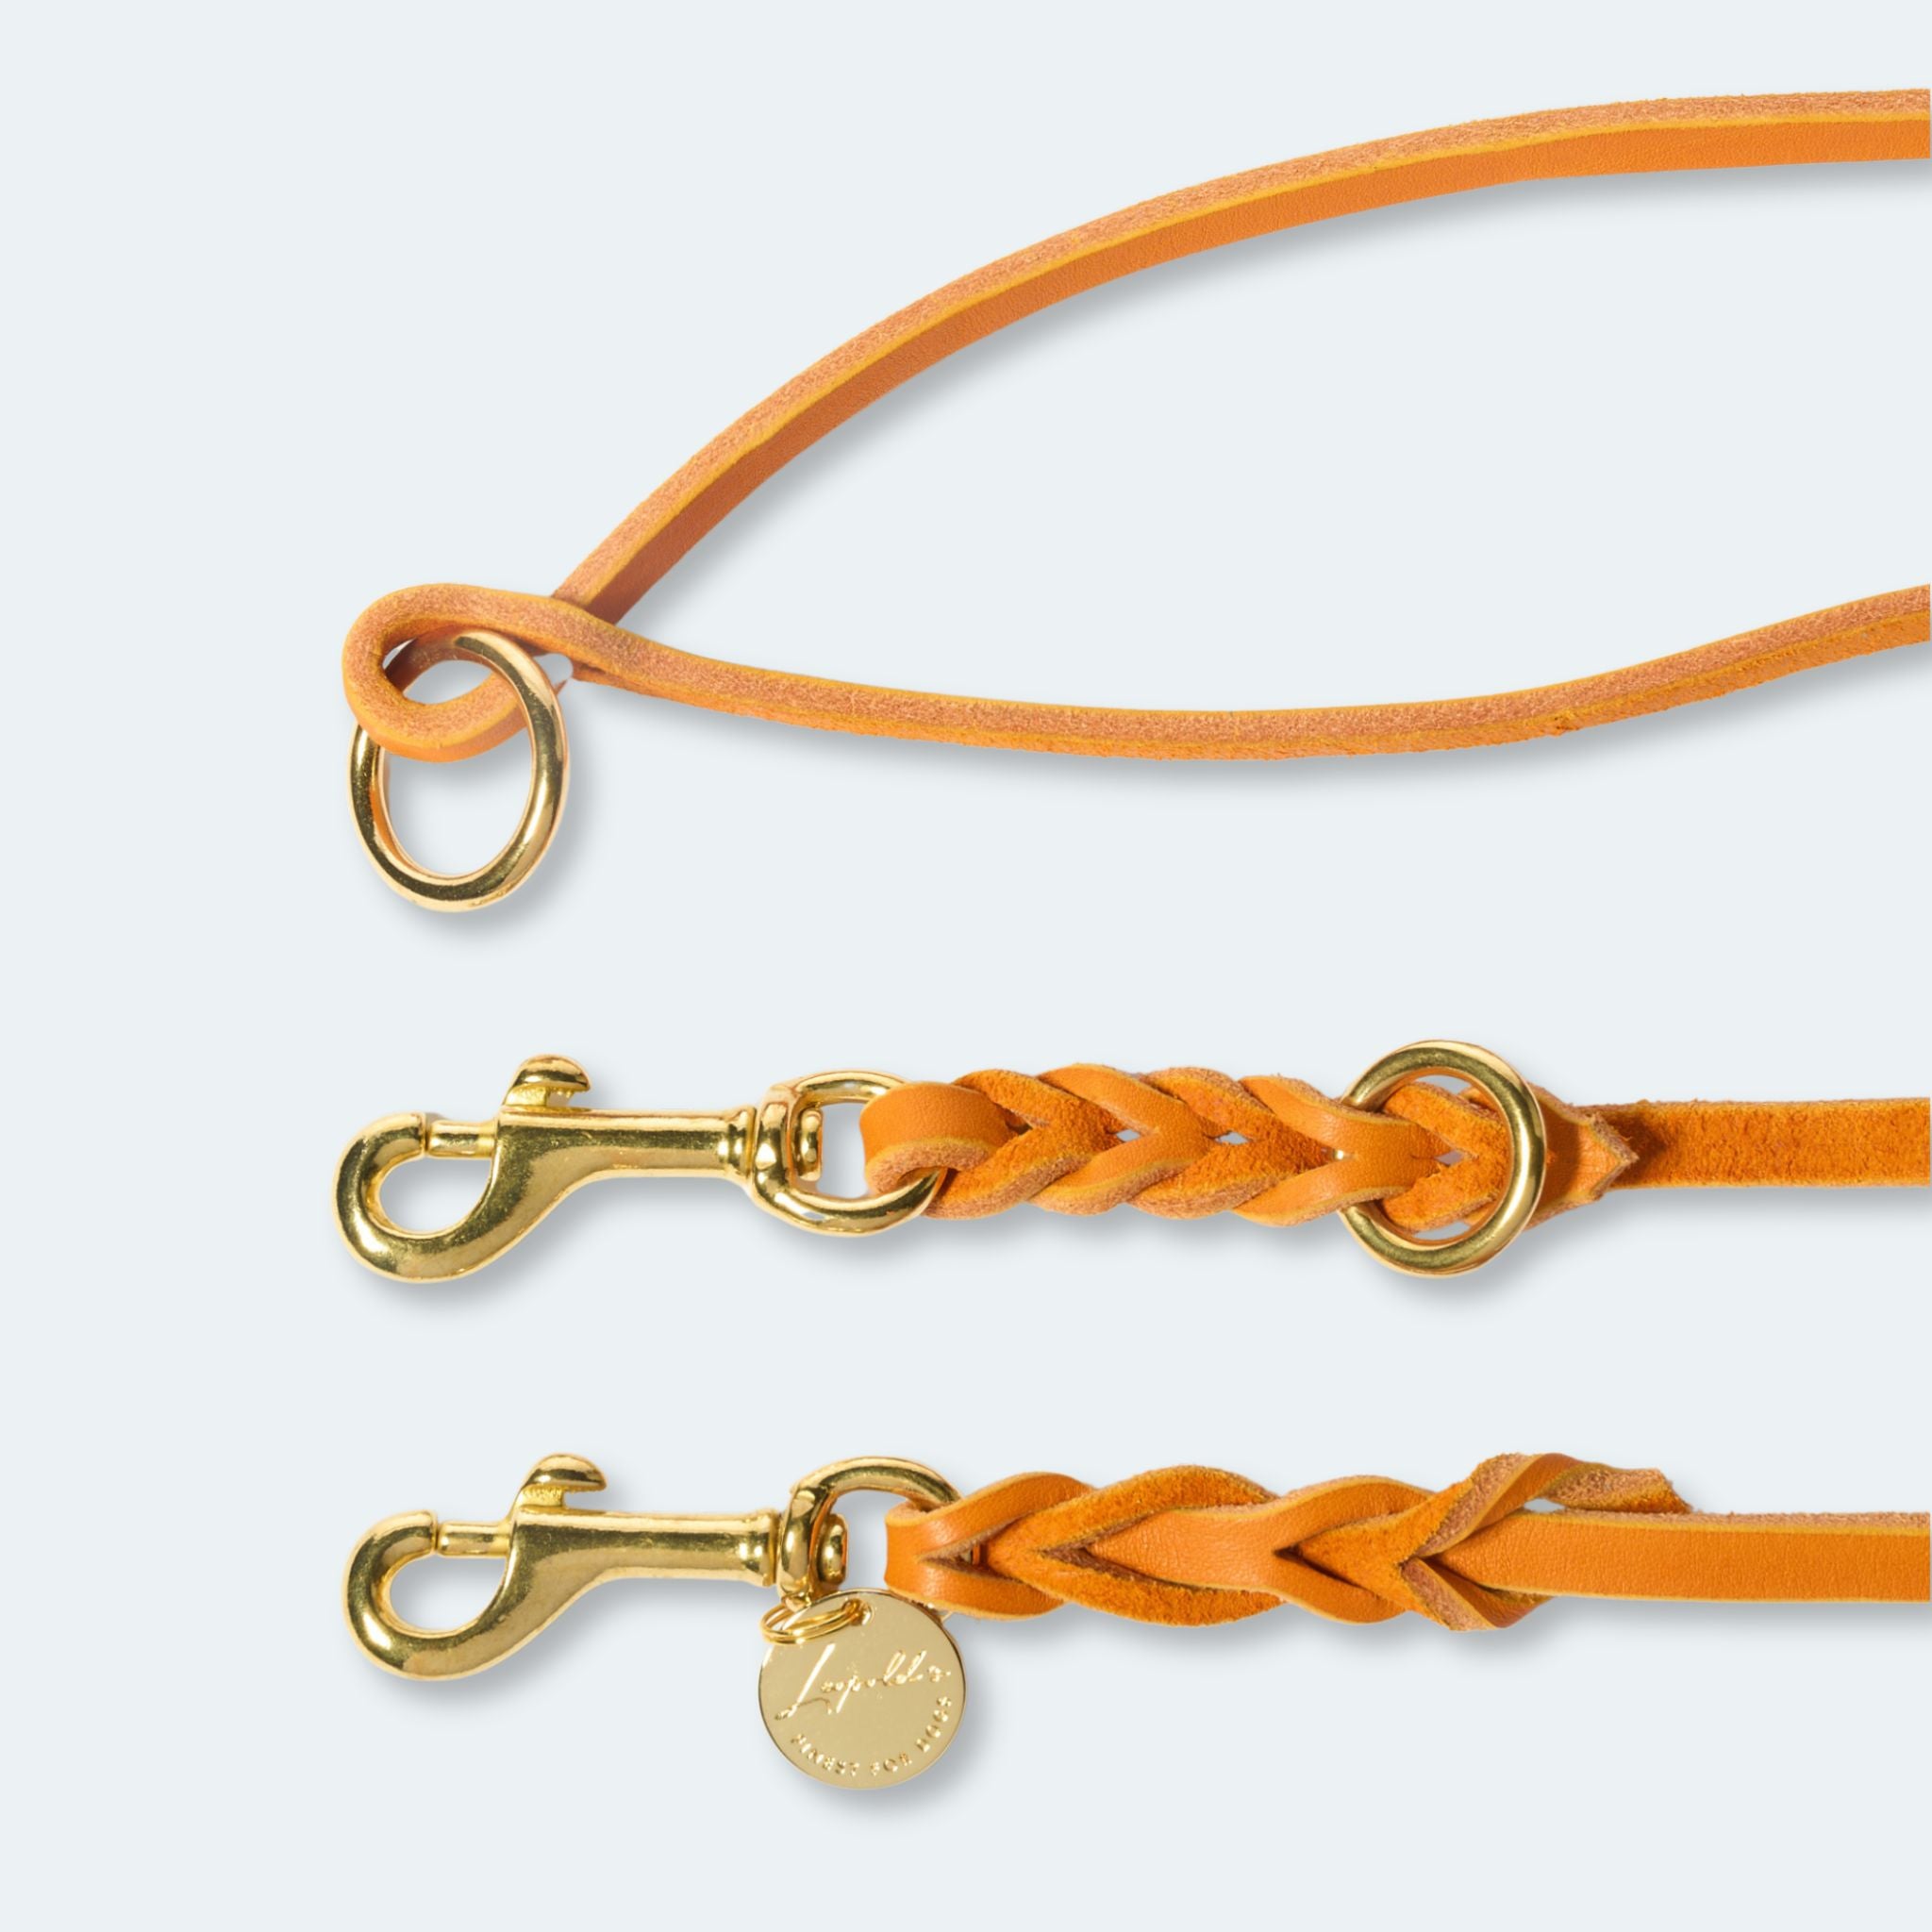 Hundeleine verstellbar Fettleder Orange-Gold   - von Leopold's kaufen bei leopolds-finest [Orange-Gold]